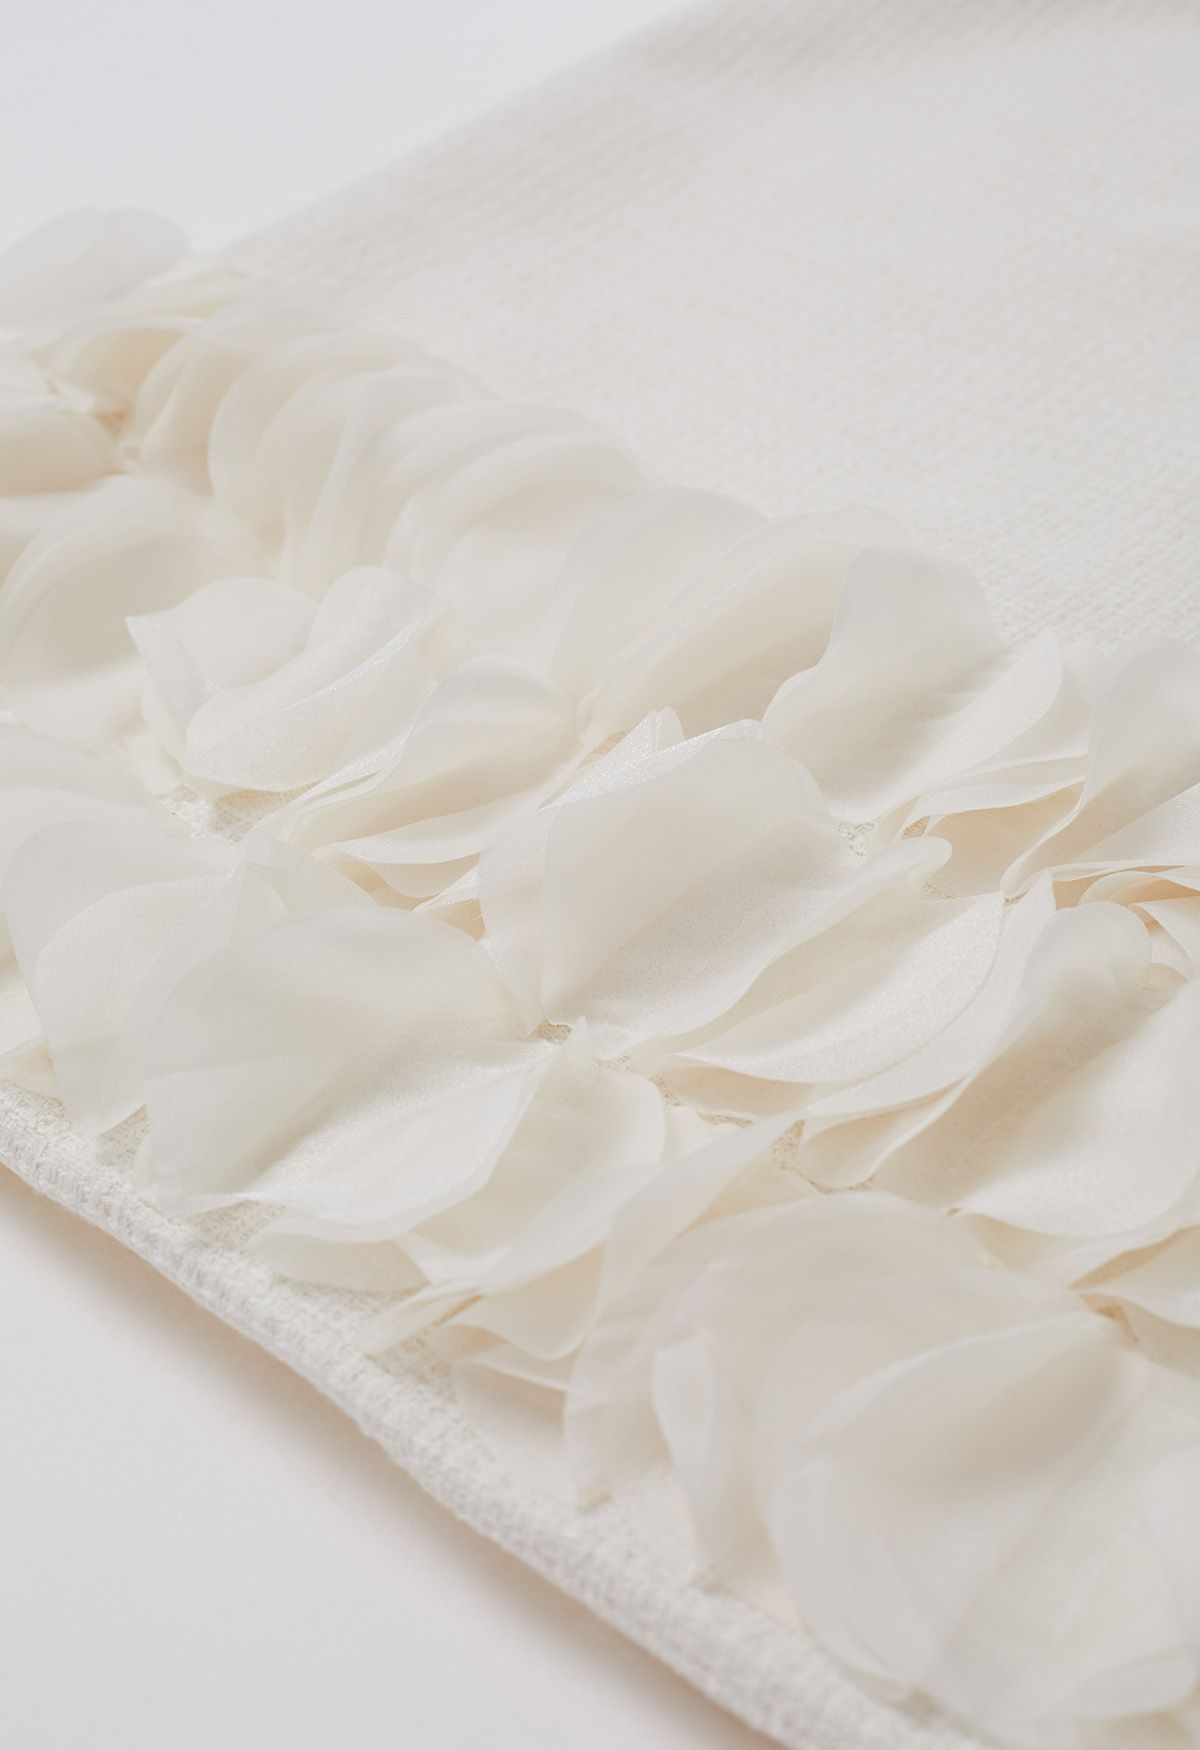 Ärmelloses Tweedkleid mit 3D-Blütenblattsaum in Elfenbein